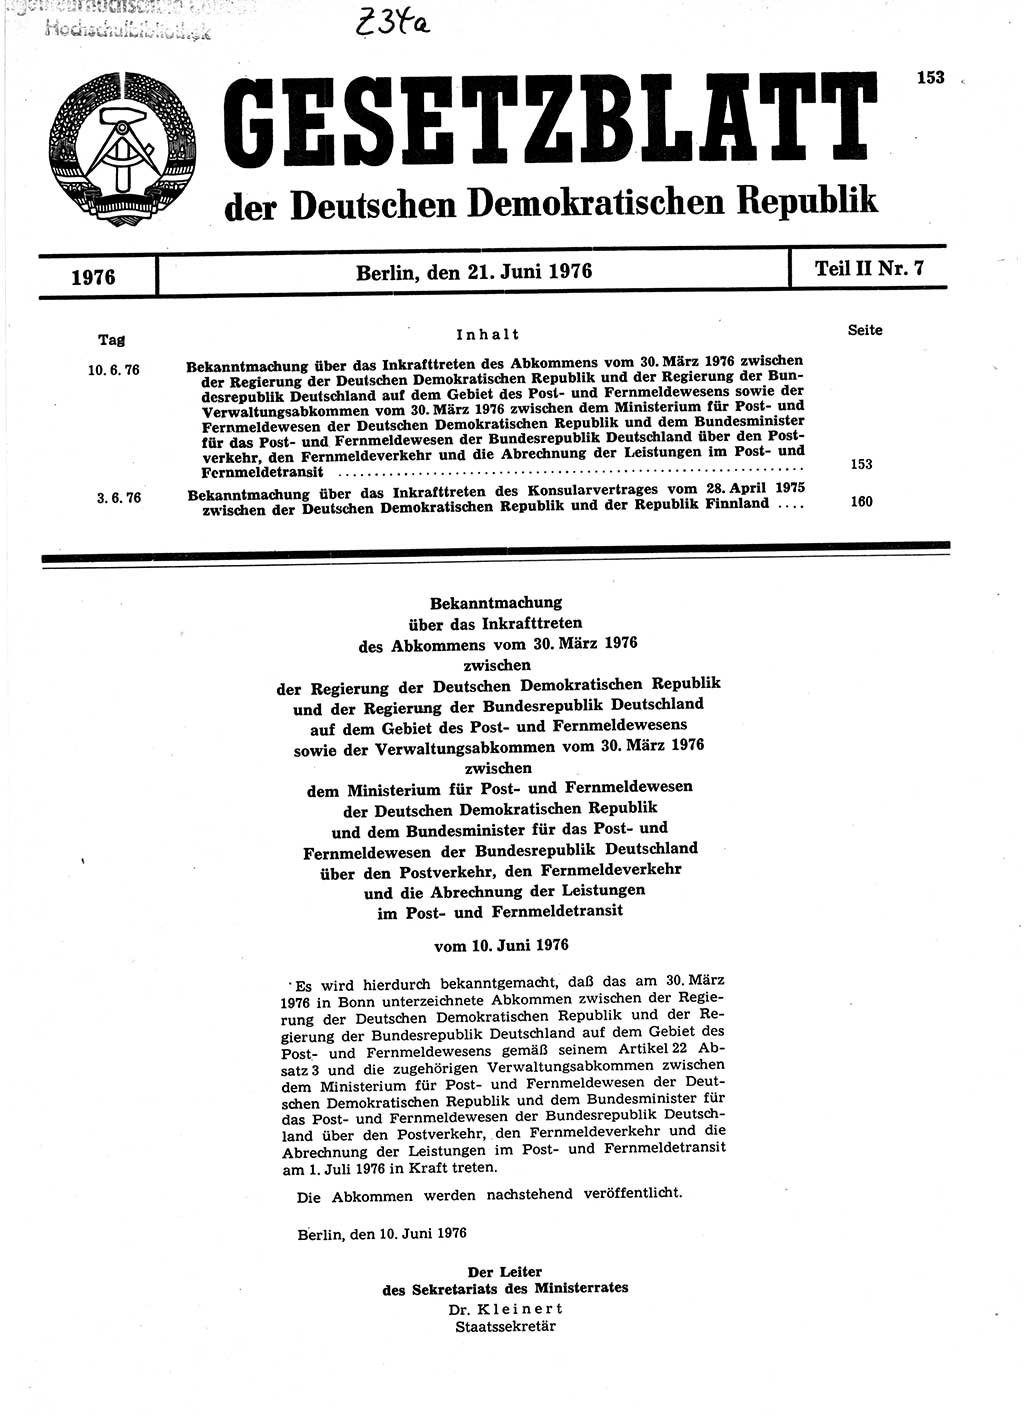 Gesetzblatt (GBl.) der Deutschen Demokratischen Republik (DDR) Teil ⅠⅠ 1976, Seite 153 (GBl. DDR ⅠⅠ 1976, S. 153)